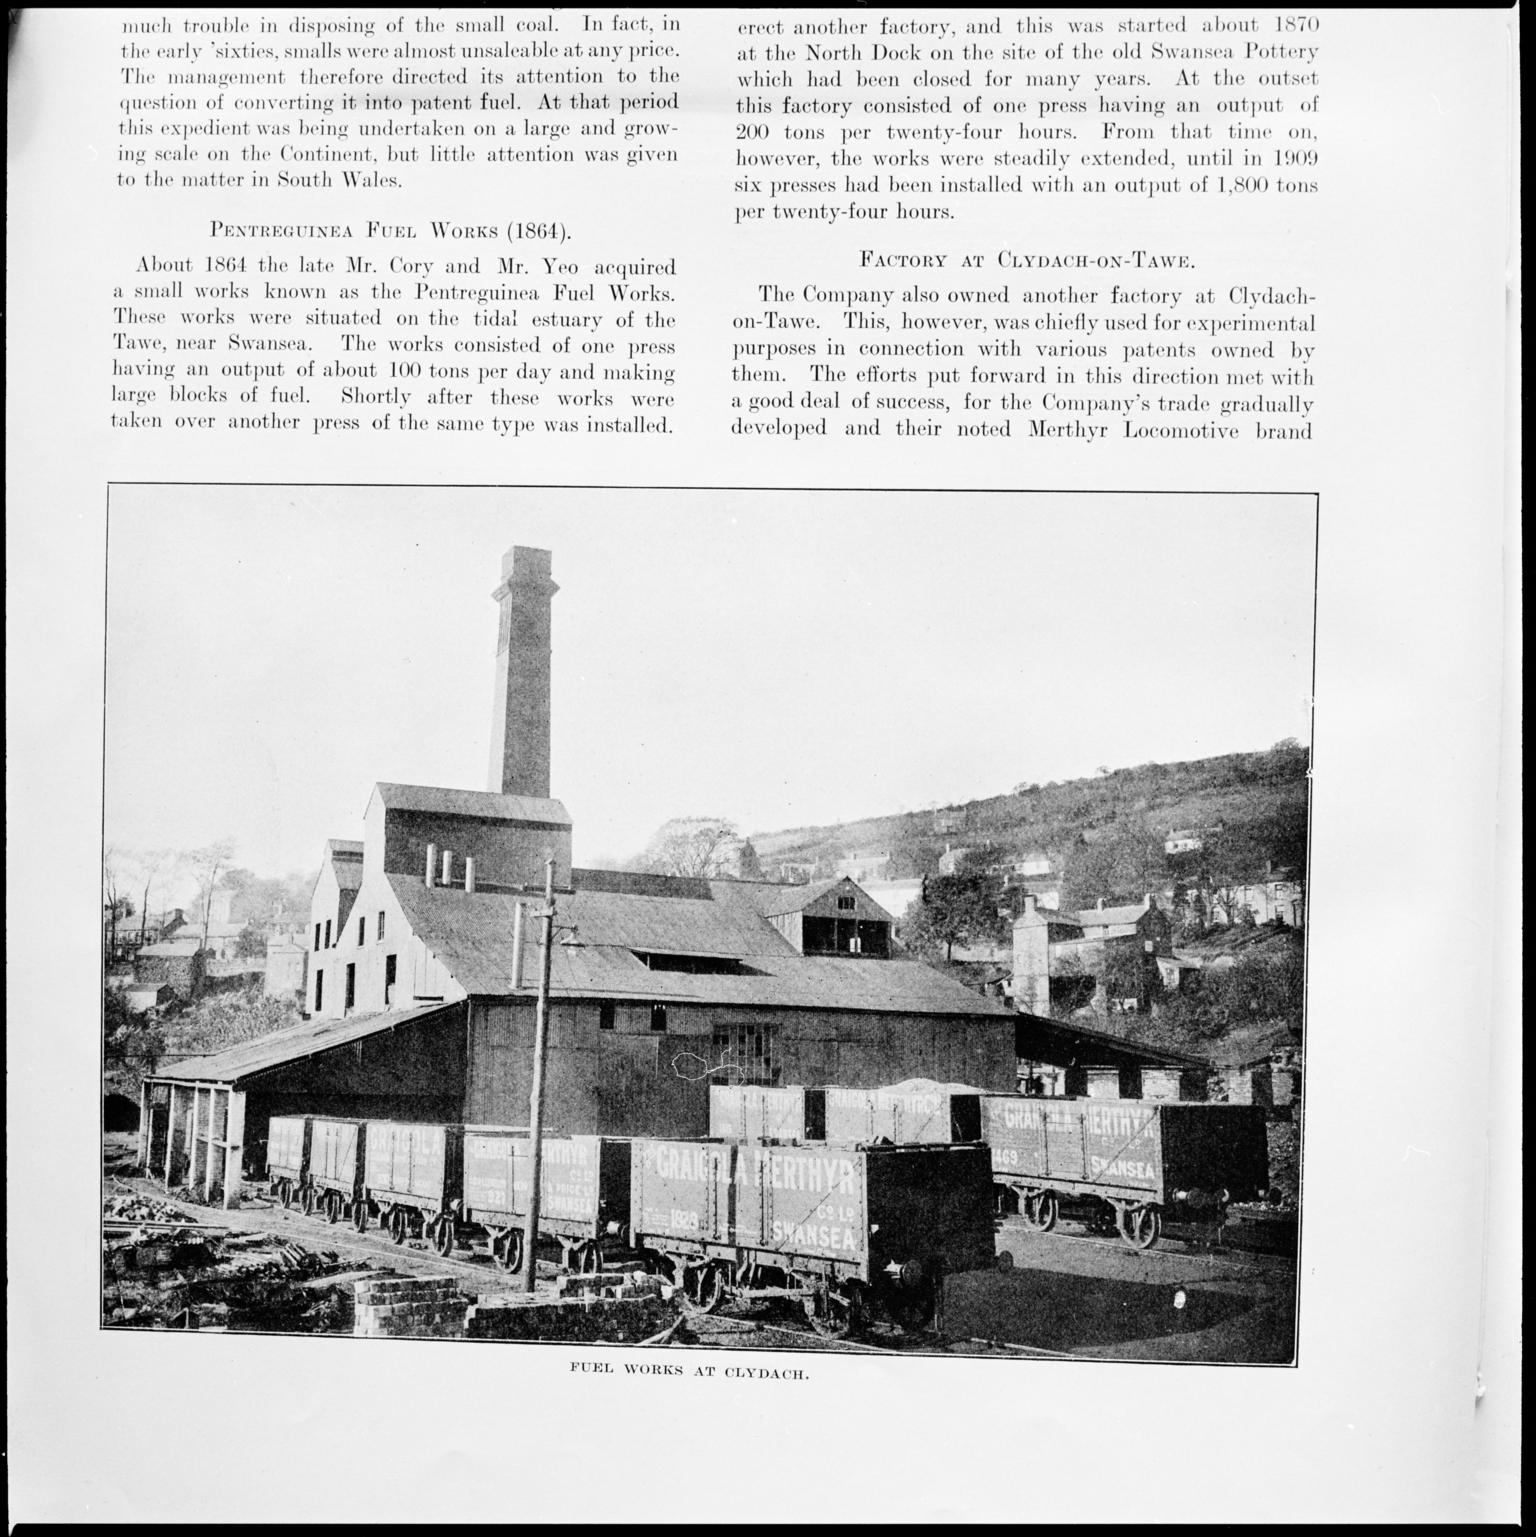 Clydach Merthyr Colliery, film negative